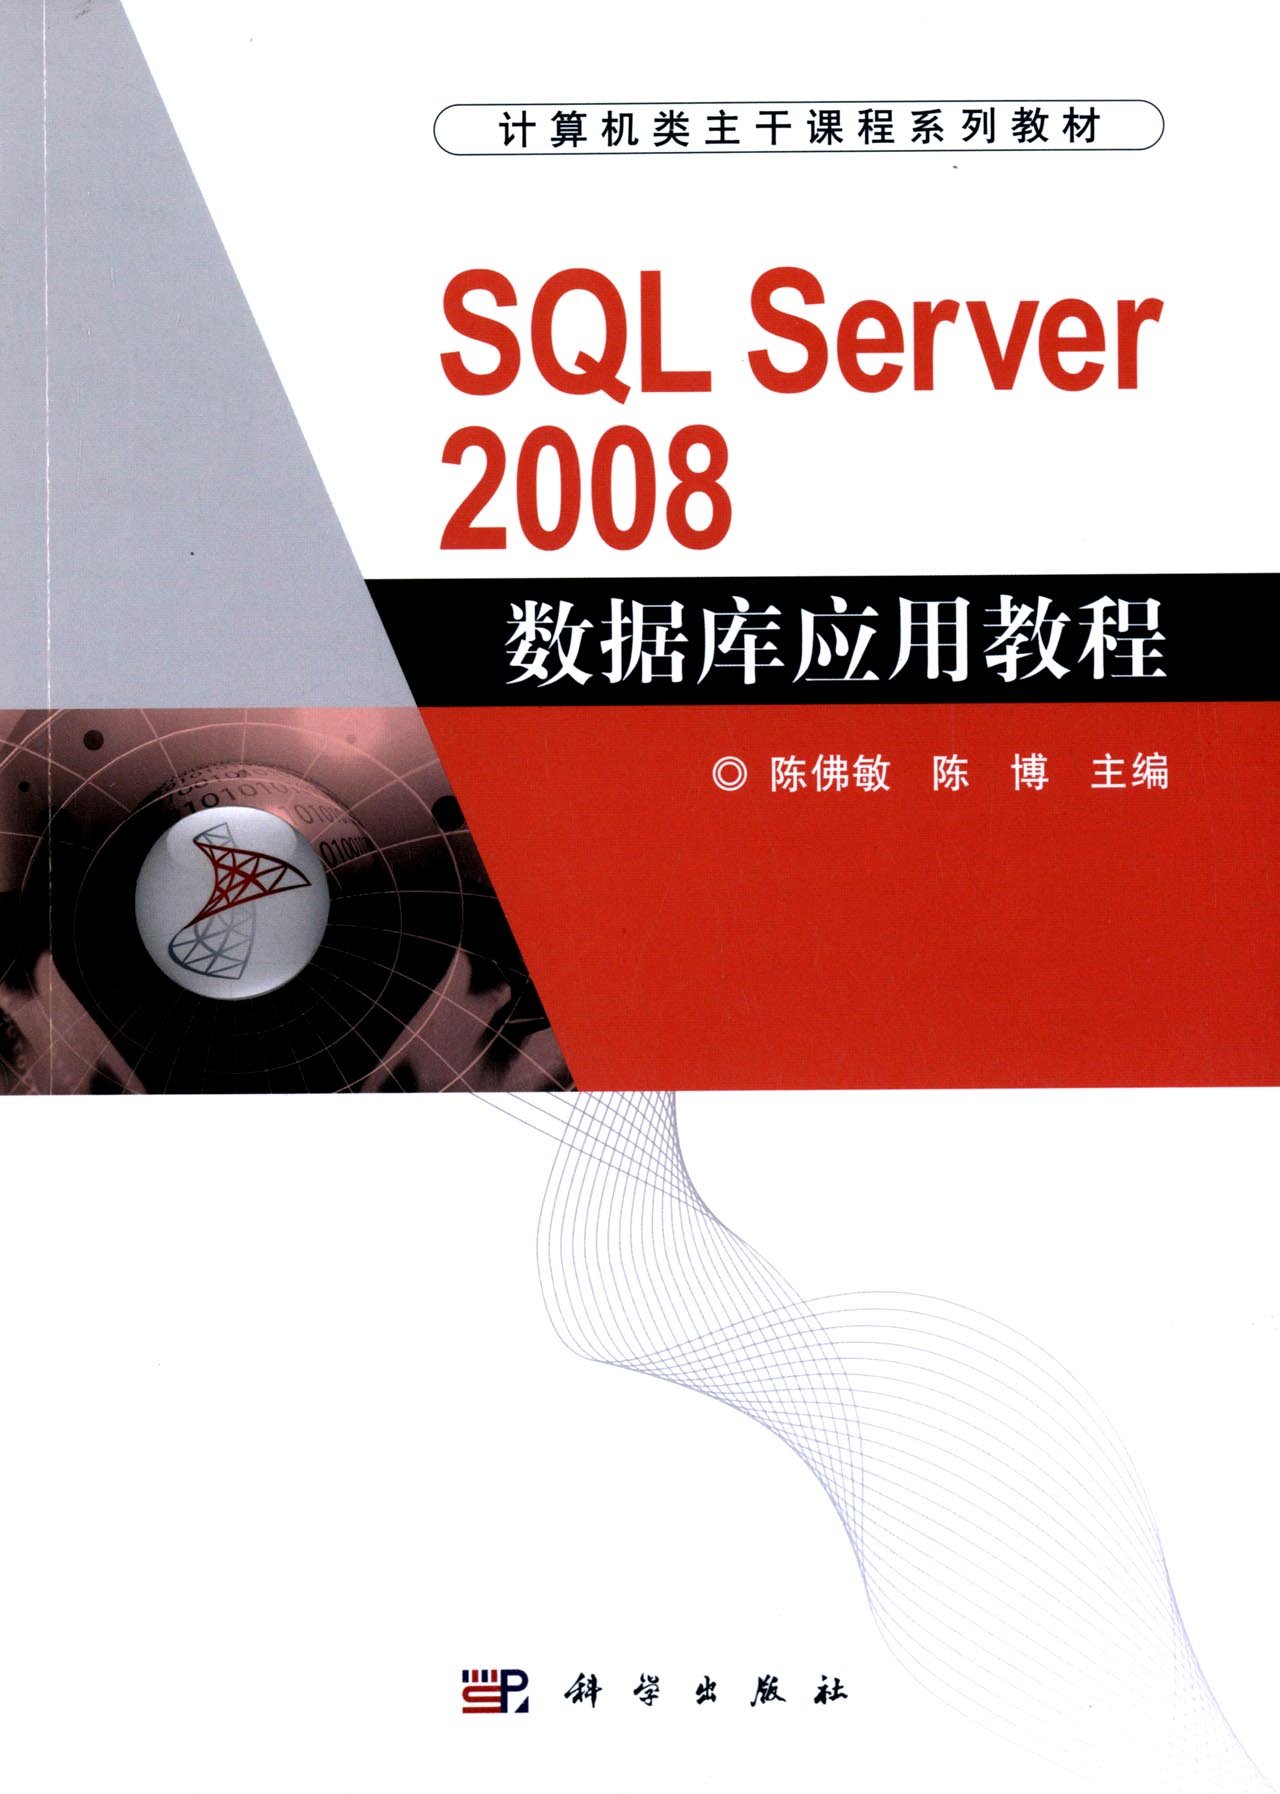 SQL Server 2008資料庫套用教程(科學出版社出版書籍)